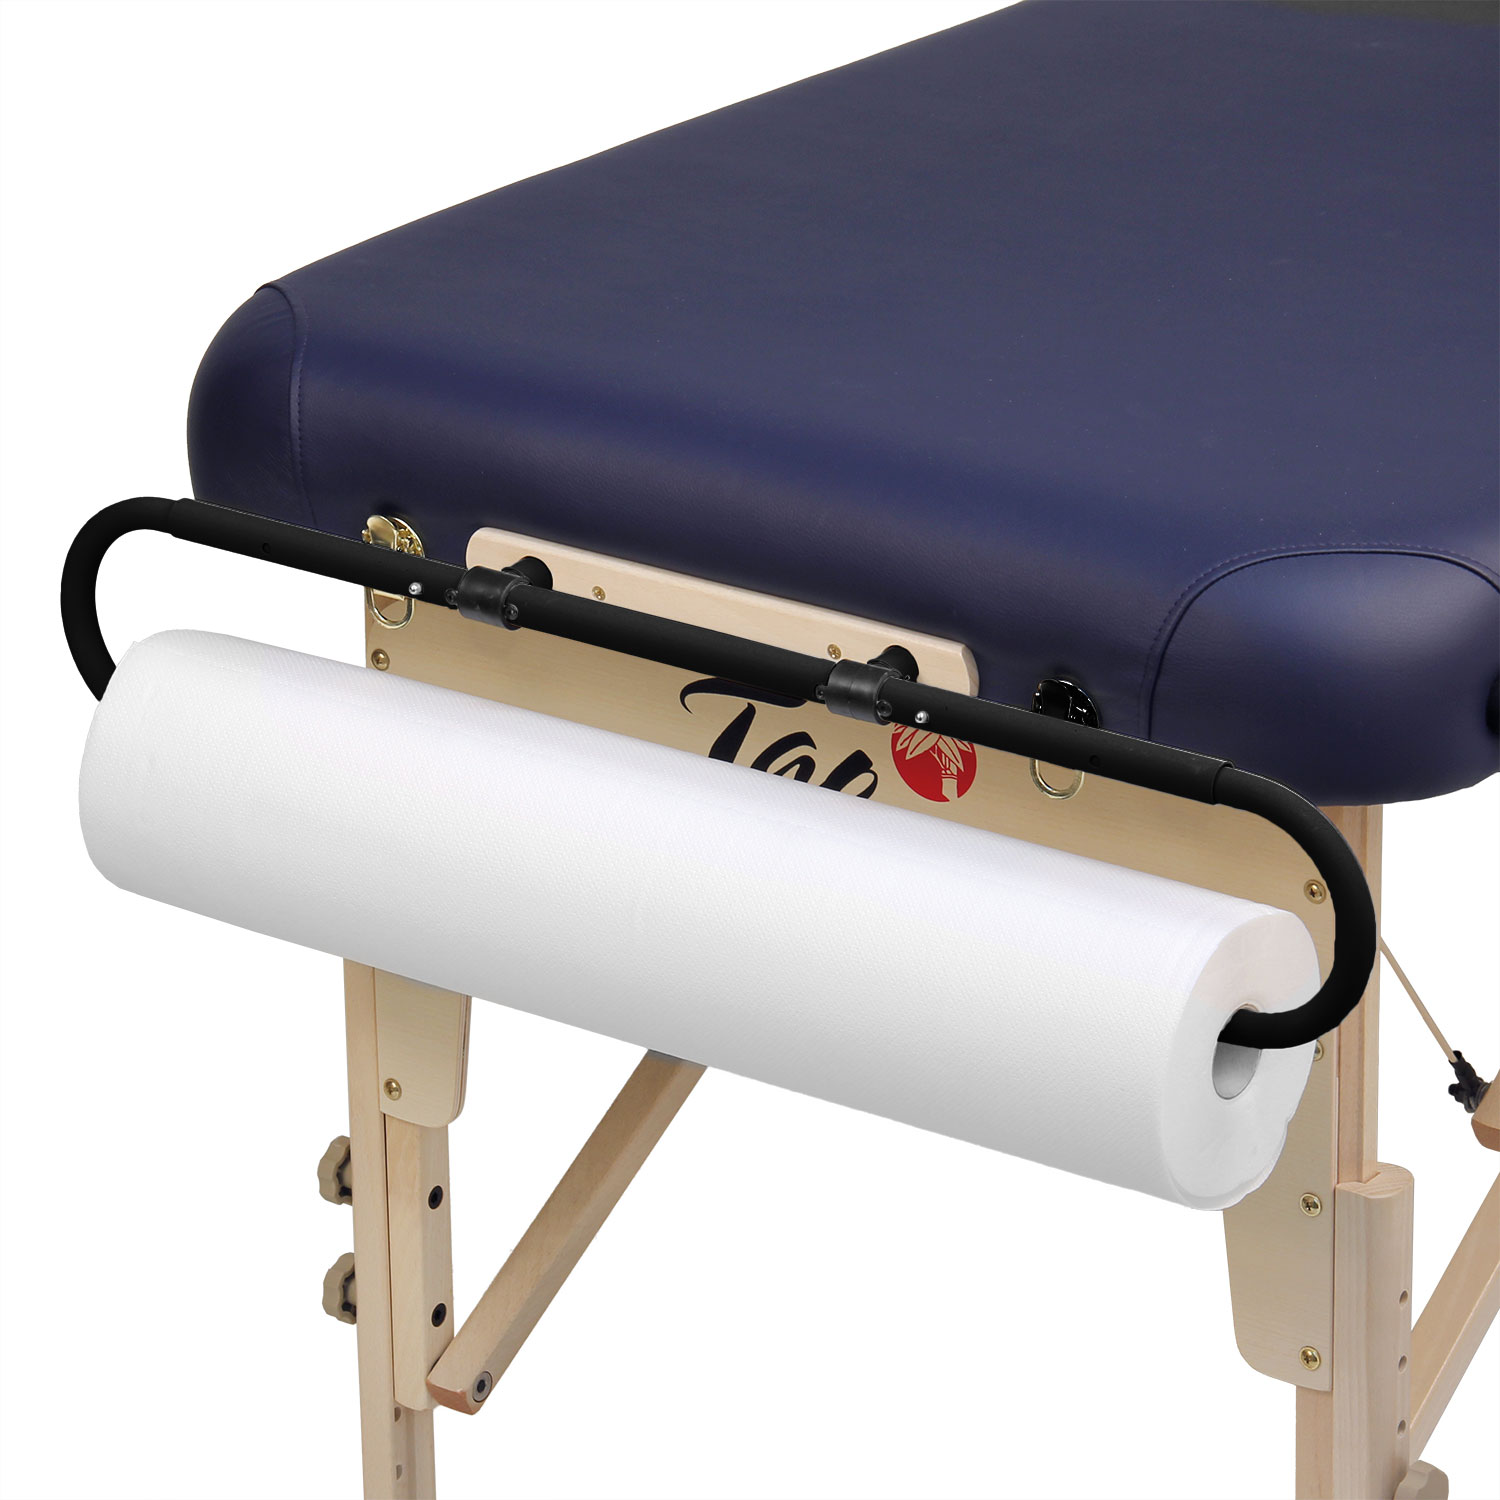 2 rouleaux de papier pour table de massage : 51 cm de large x 40 m de long.  : : Hygiène et Santé